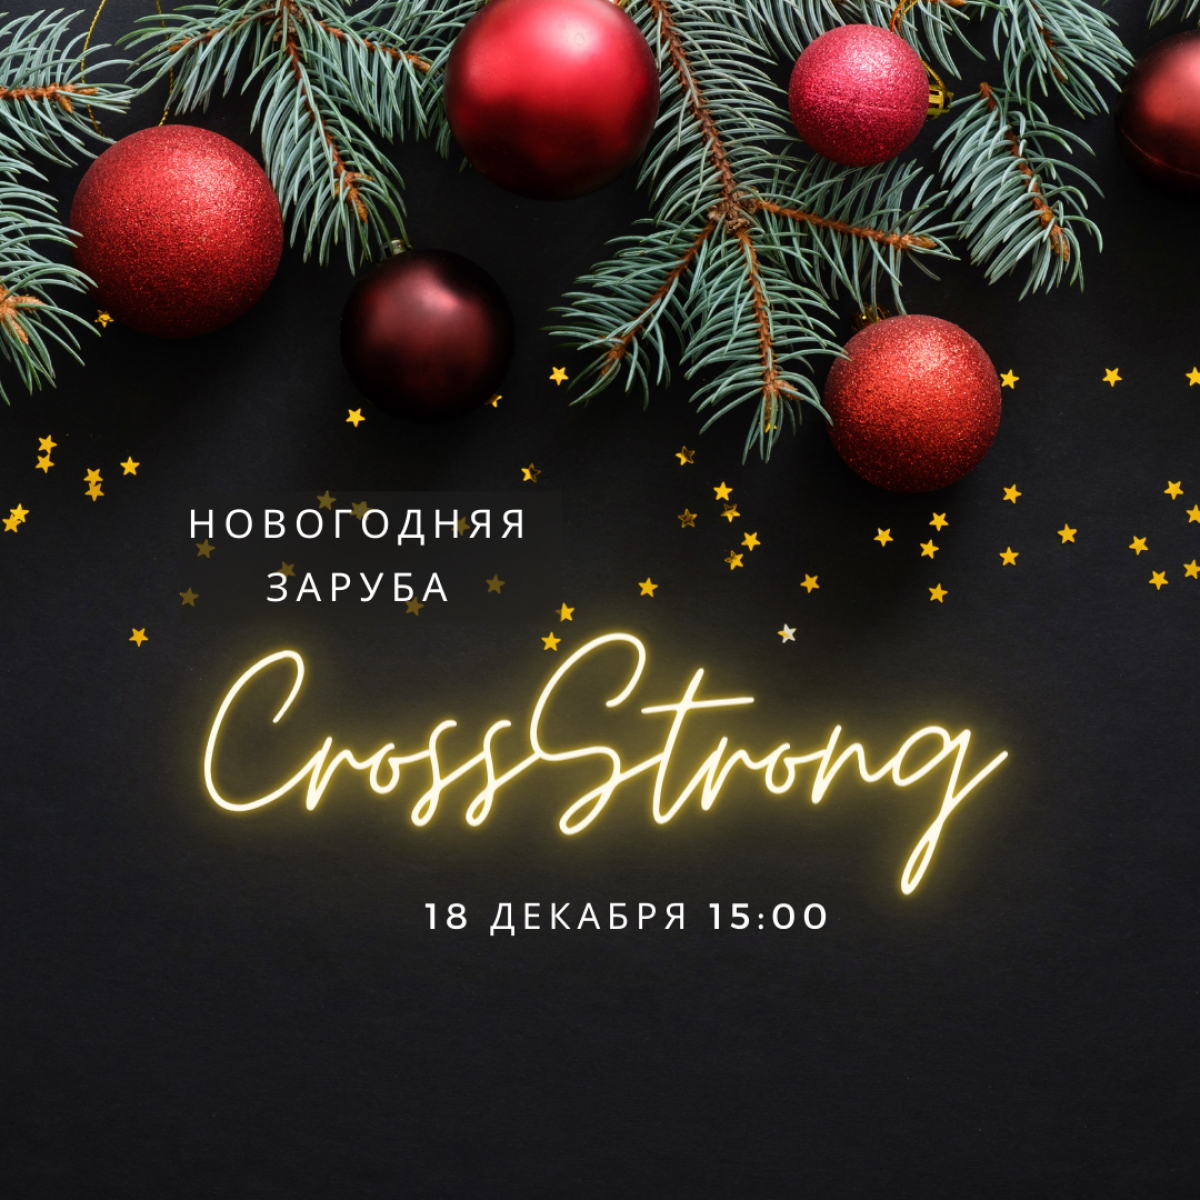 Приглашаем на Новогоднюю Зарубу CrossStrong!